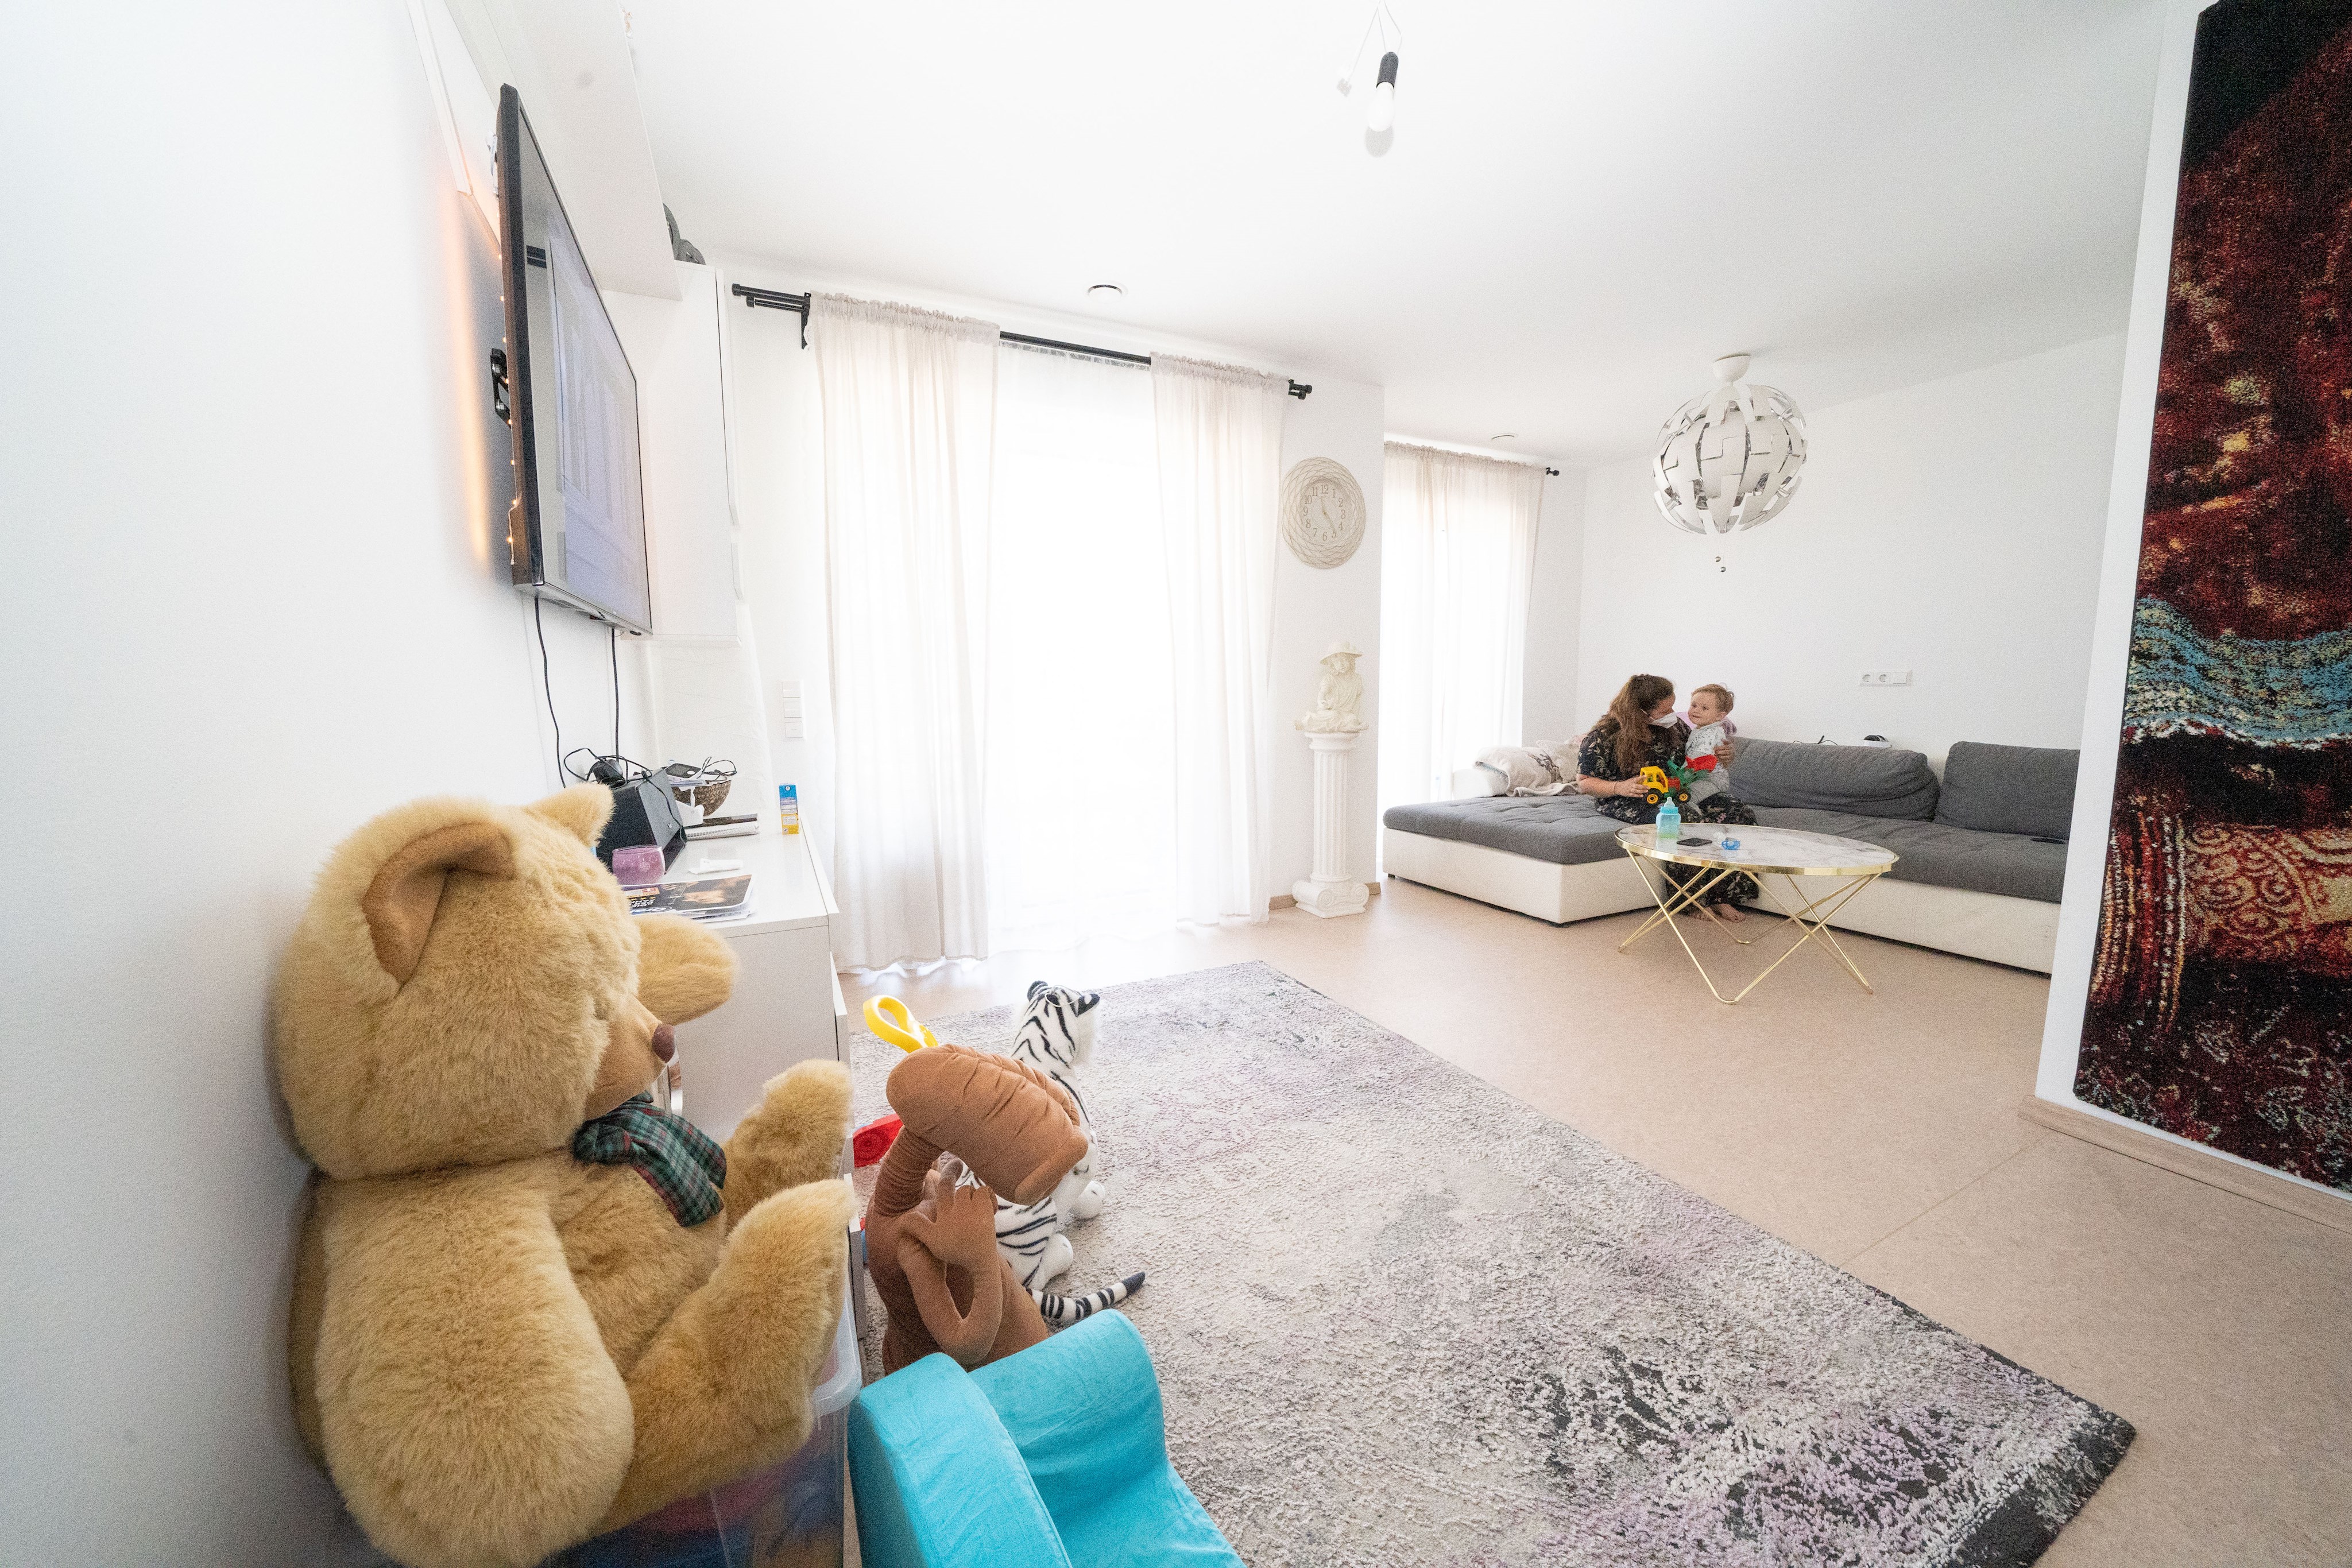 Foto: ein helles Wohnzimmer, auf einem Sofa spielt eine Frau mit ihrem Kind